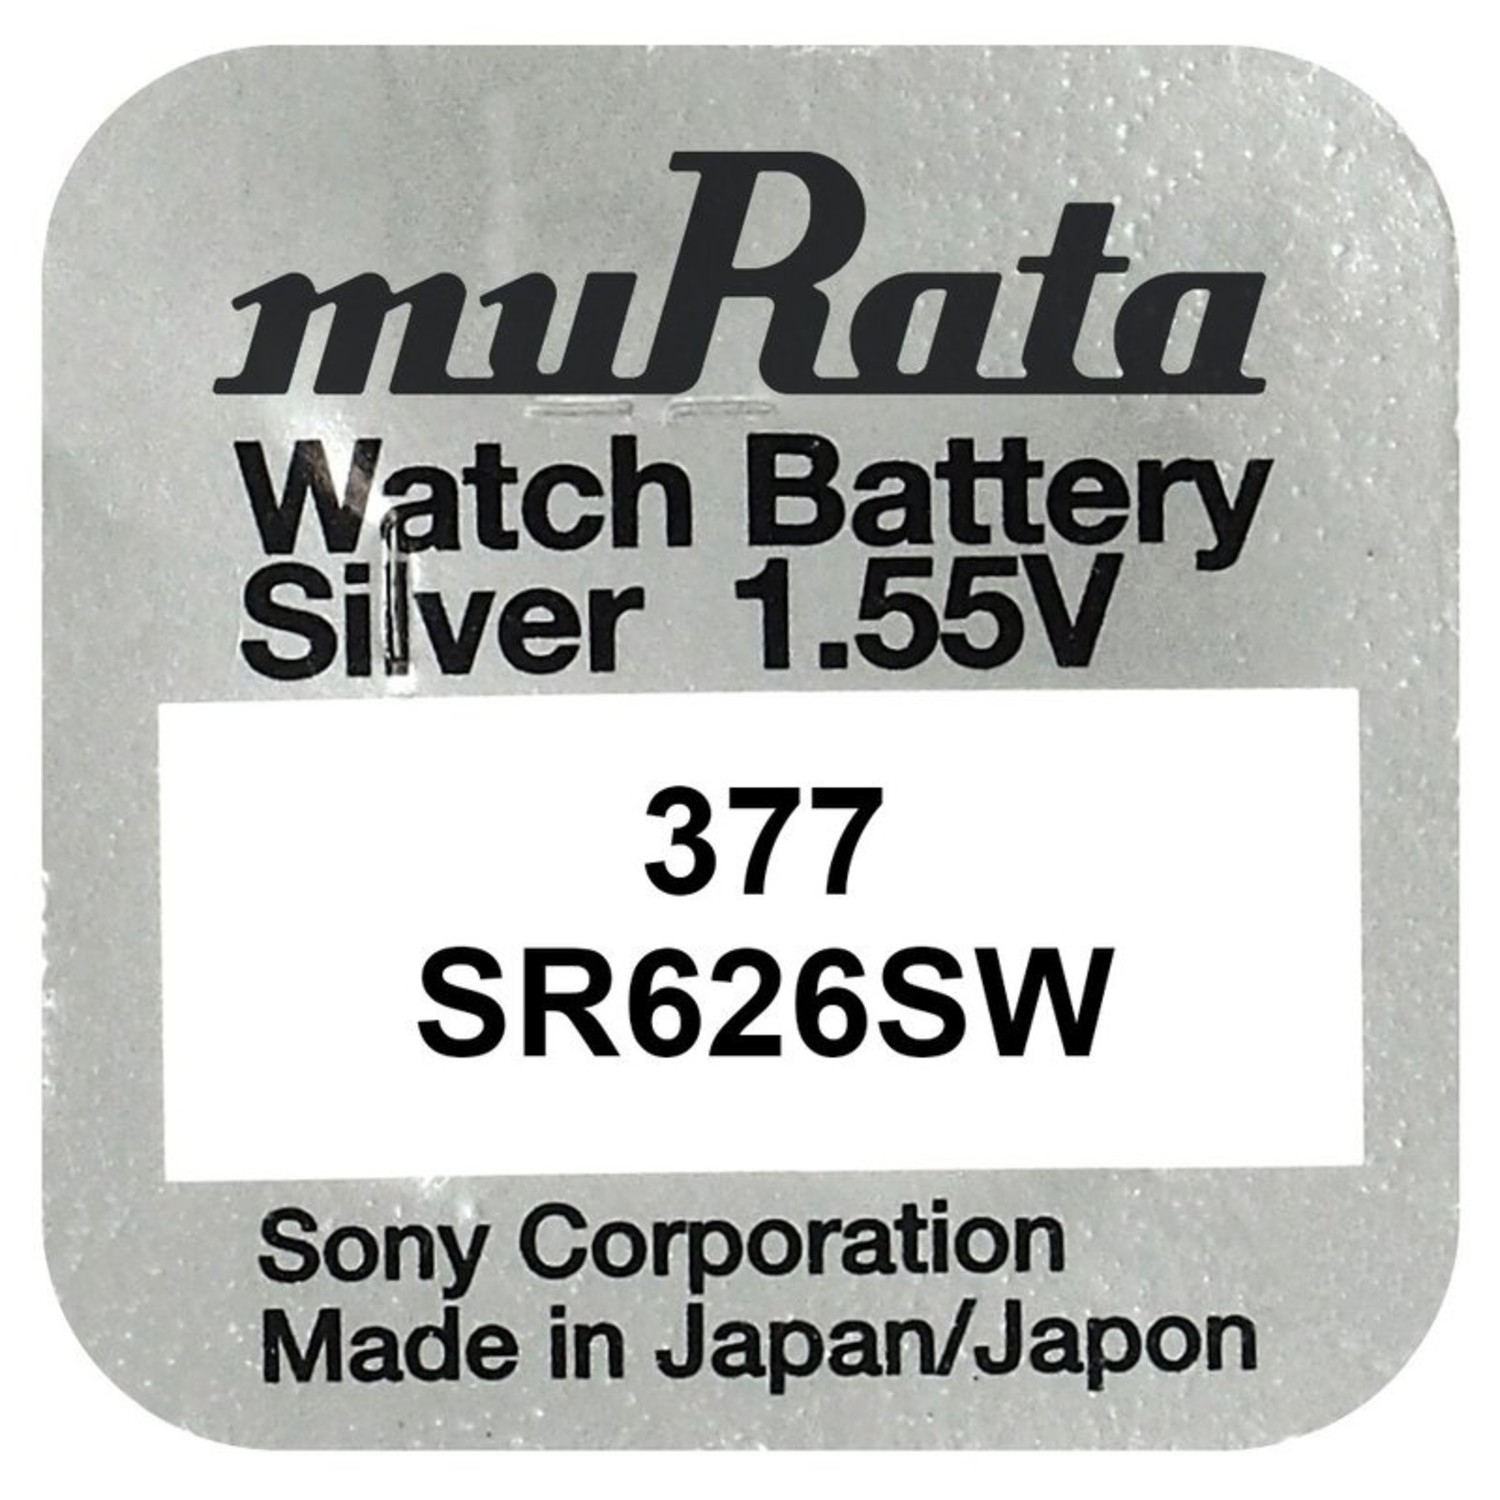 vorst Waarschijnlijk servet 377 horloge batterij SR626SW Murata - Beterbatterij